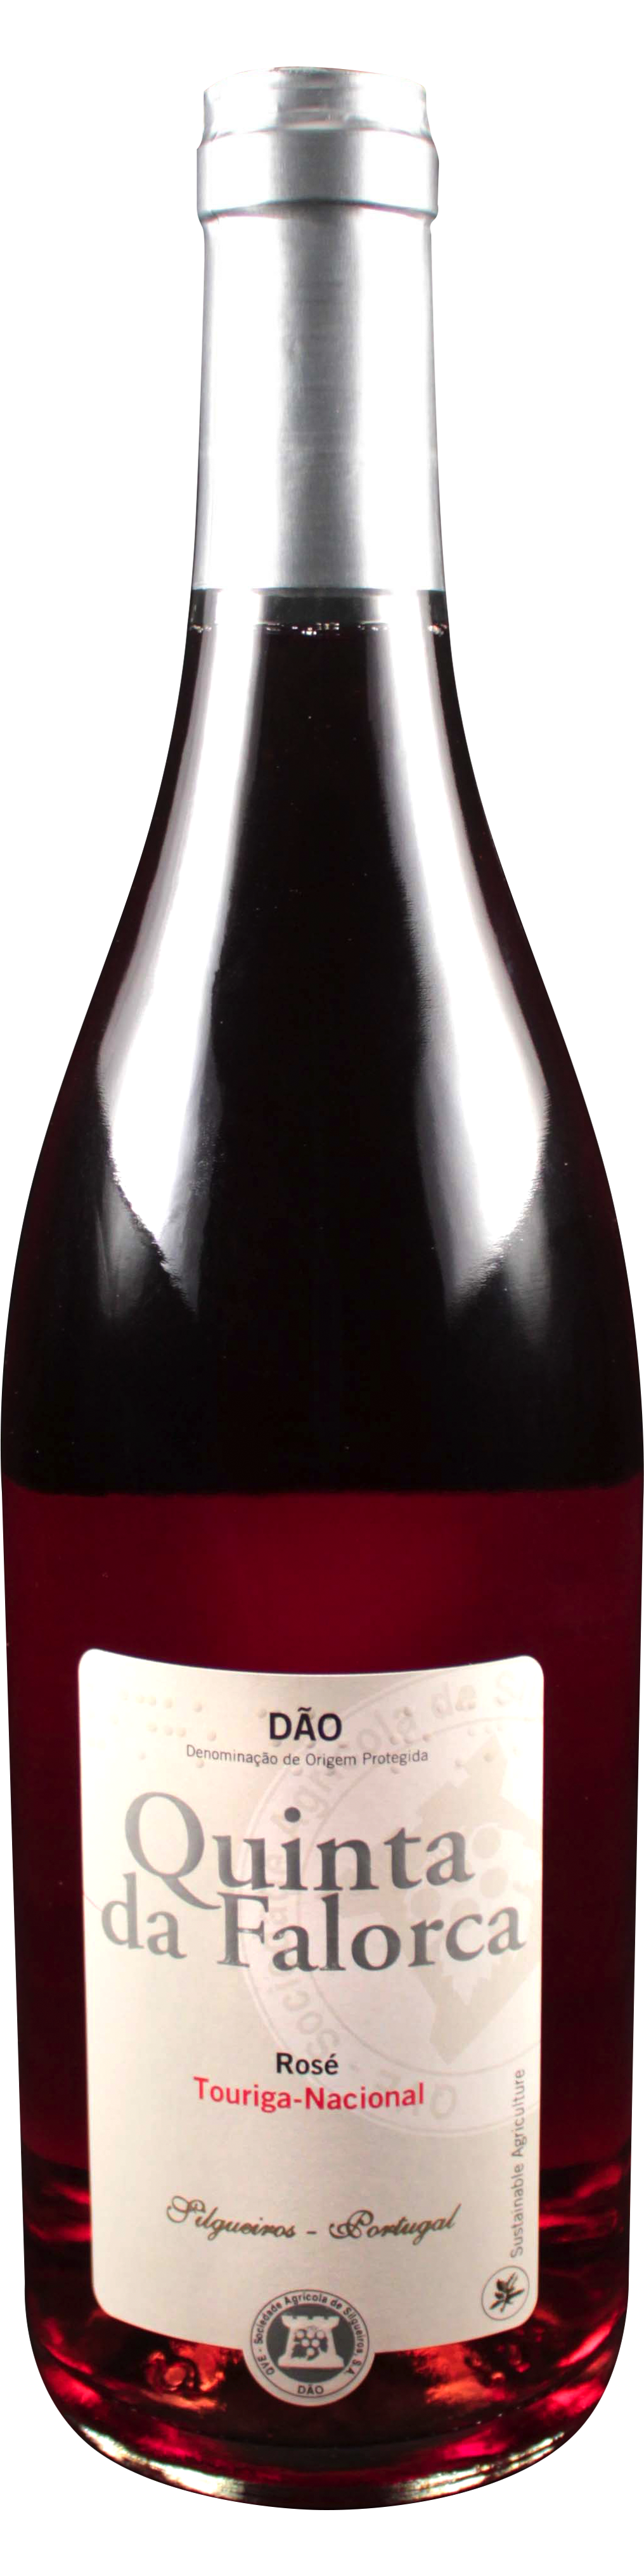 Bottle shot of 2011 Falorca Rosé